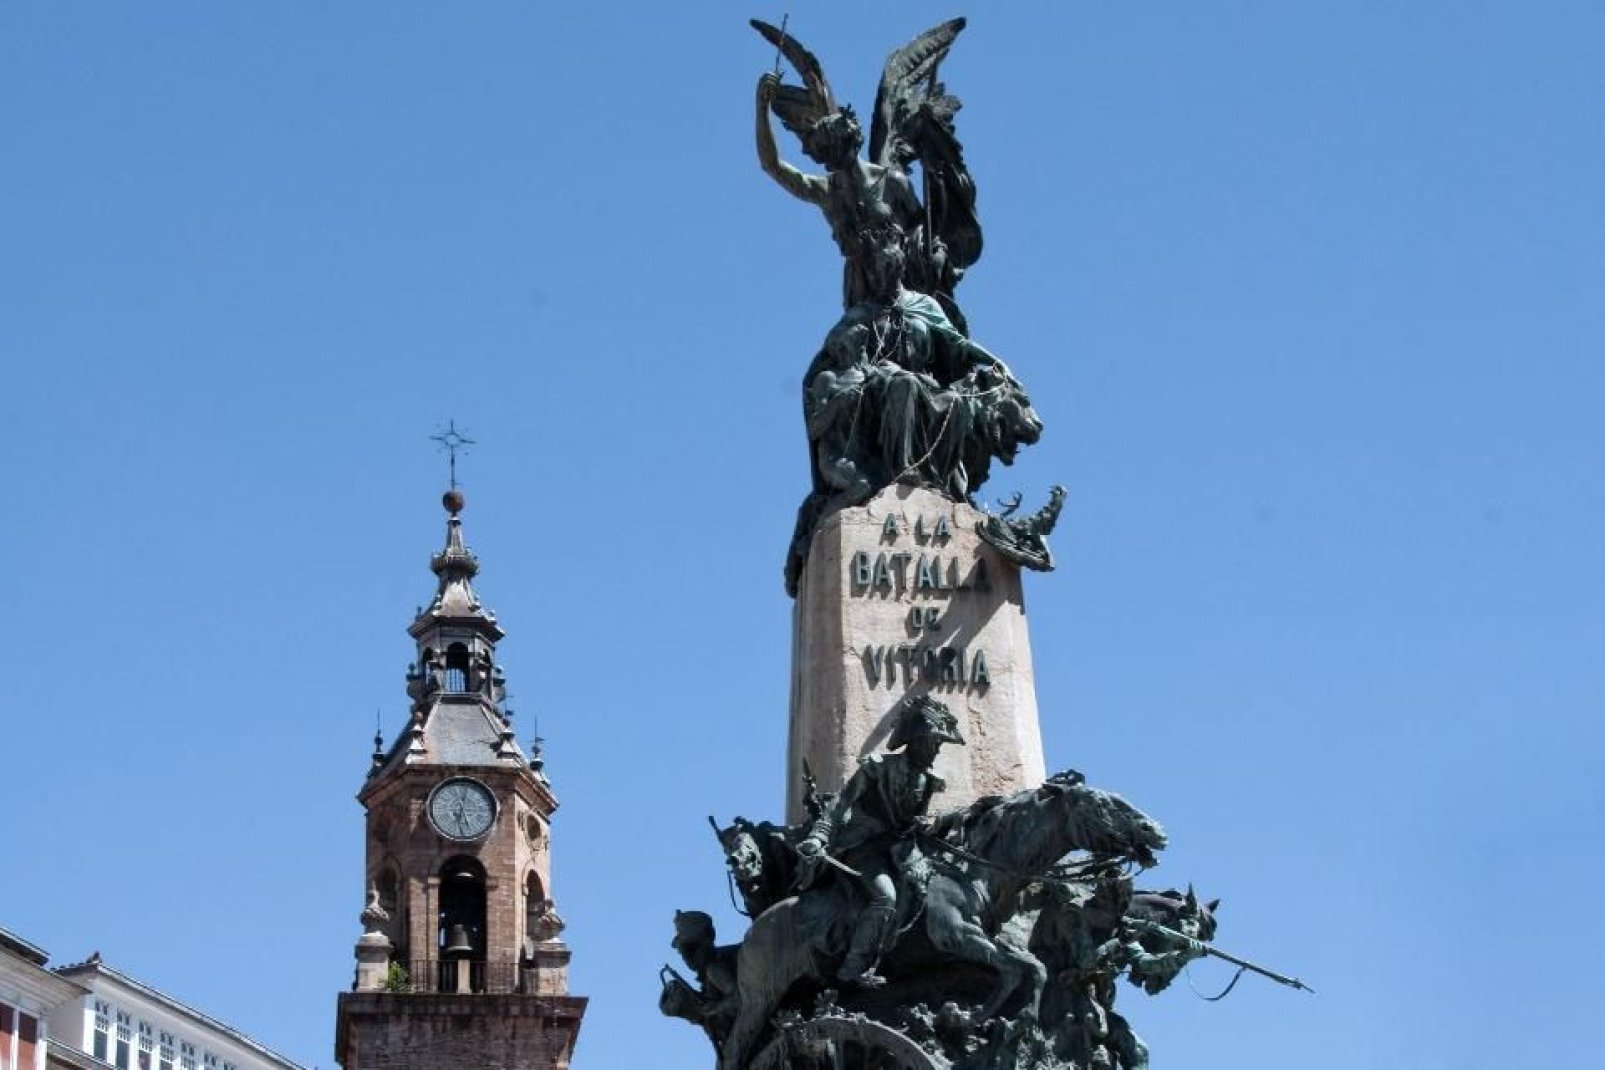 Questo monumento, situato al centro della Piazza della Virgen Blanca, commemora la battaglia di Vitoria durante la Guerra d'Indipendenza che contrappose francesi e spagnoli dal 1808 al 1814.